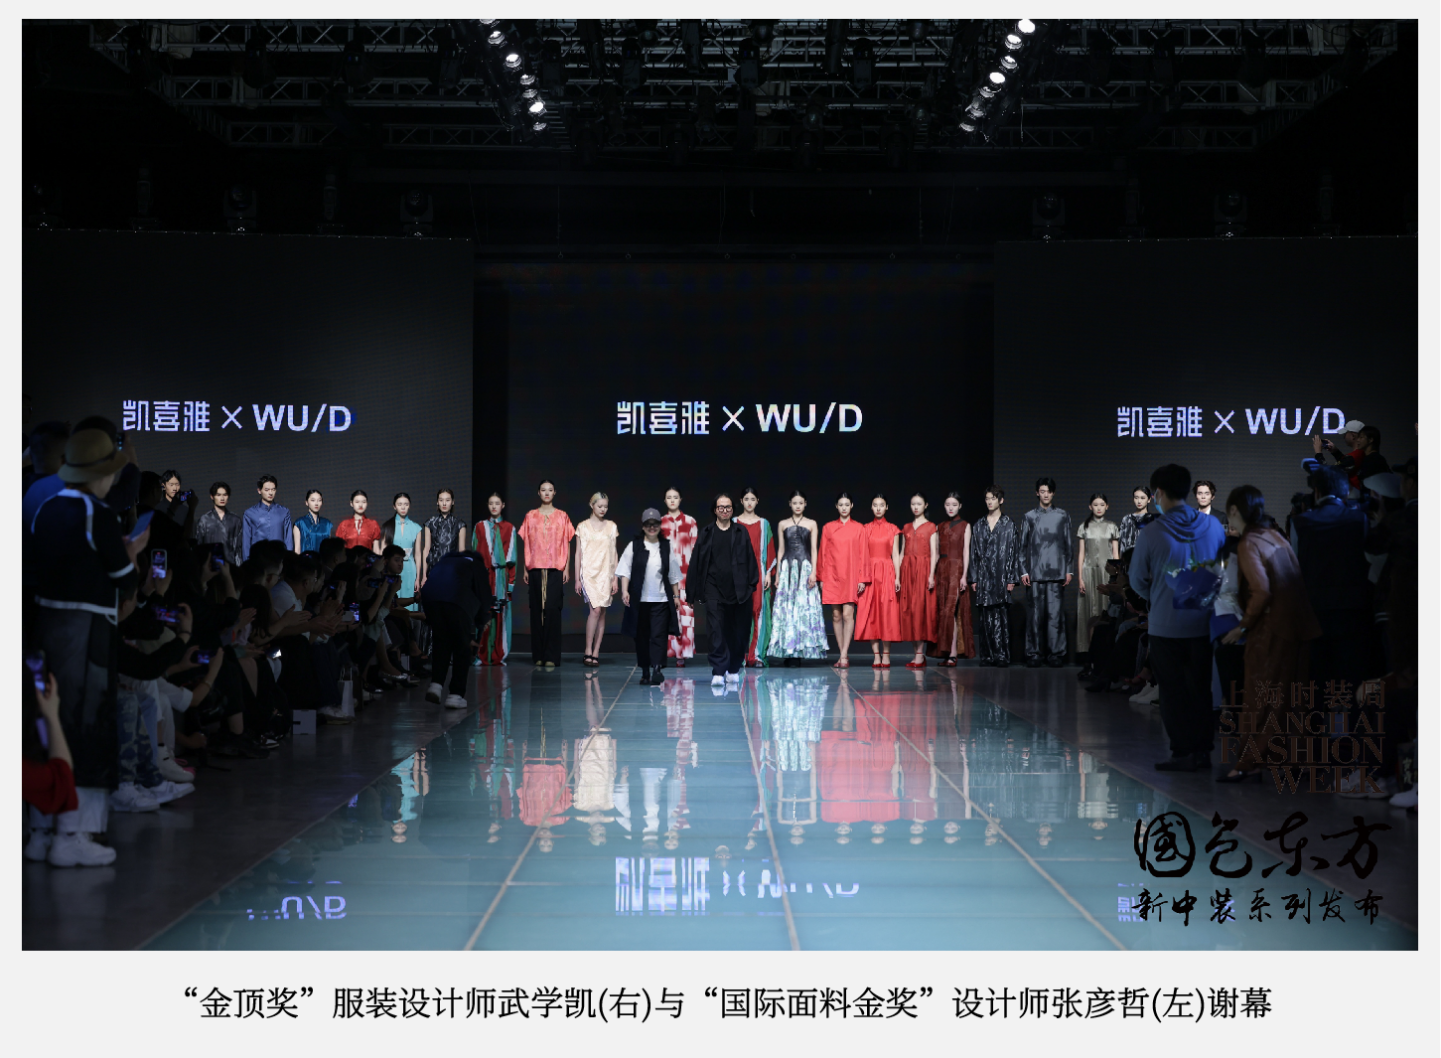 上海国际时尚中心举办上海时装周“国色东方”系列时装秀，提供华夏文化的创新方案与风尚指引